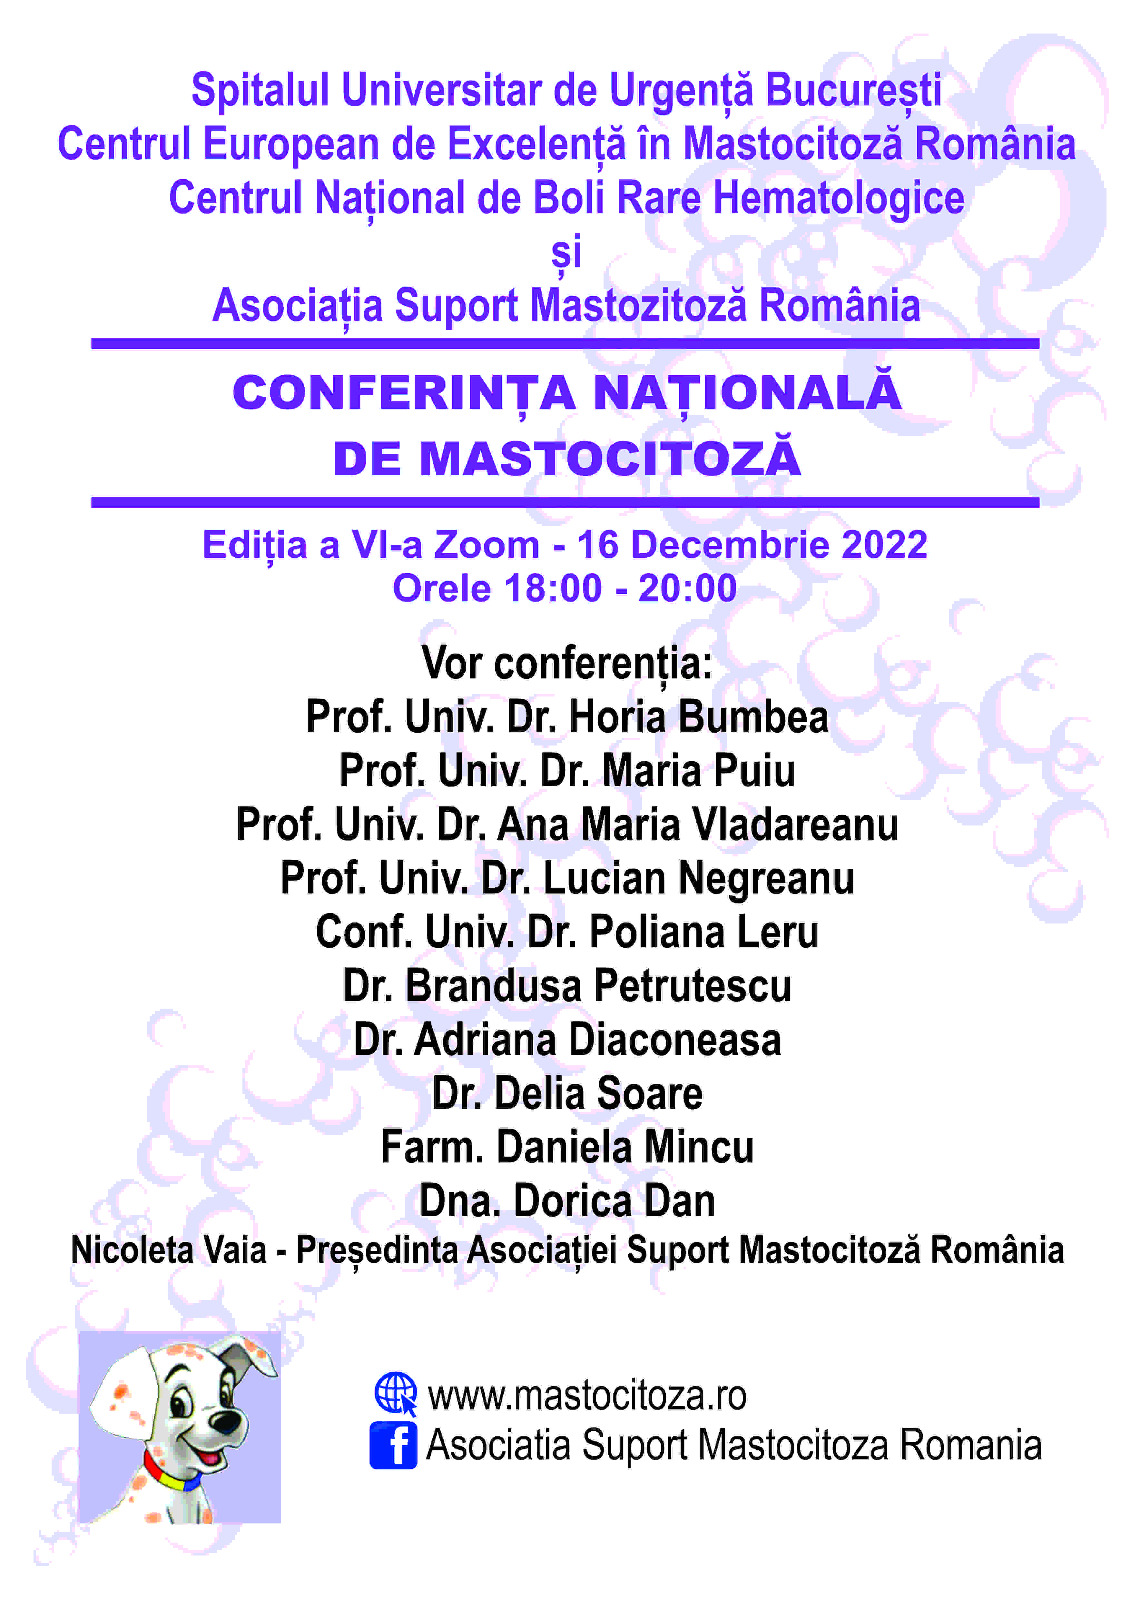 Asociația Suport Mastocitoză România organizează a VI-a ediție a Conferinței Naționale de Mastocitoză - Boli Rare